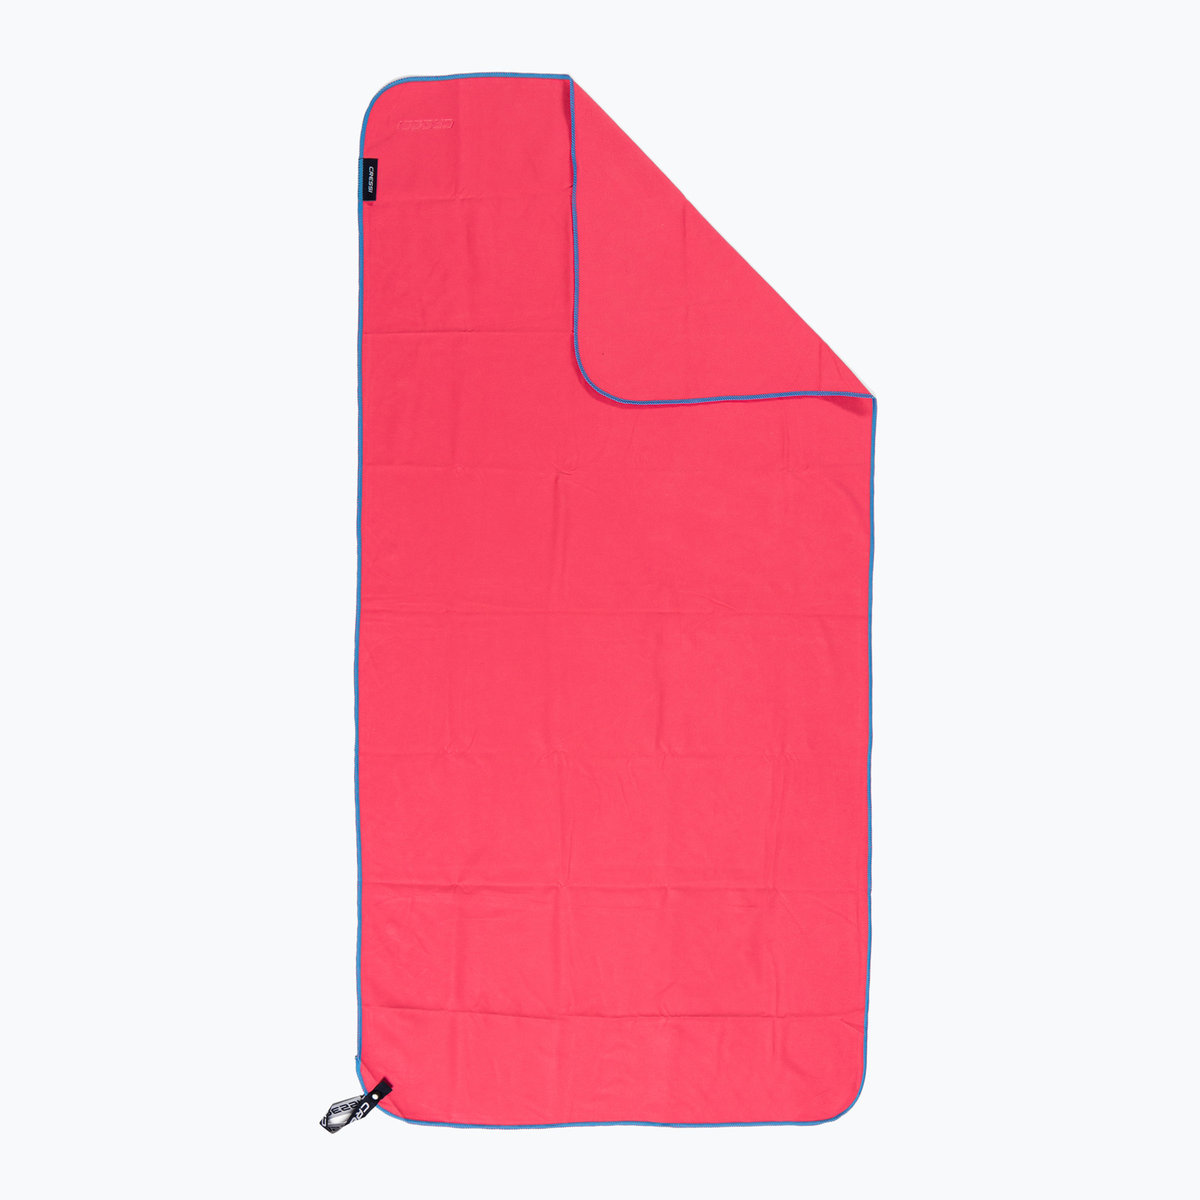 Cressi szybkoschnący ręcznik z mikrofibry, uniseks, dla dorosłych, czerwony/niebieski, 160 x 80 cm